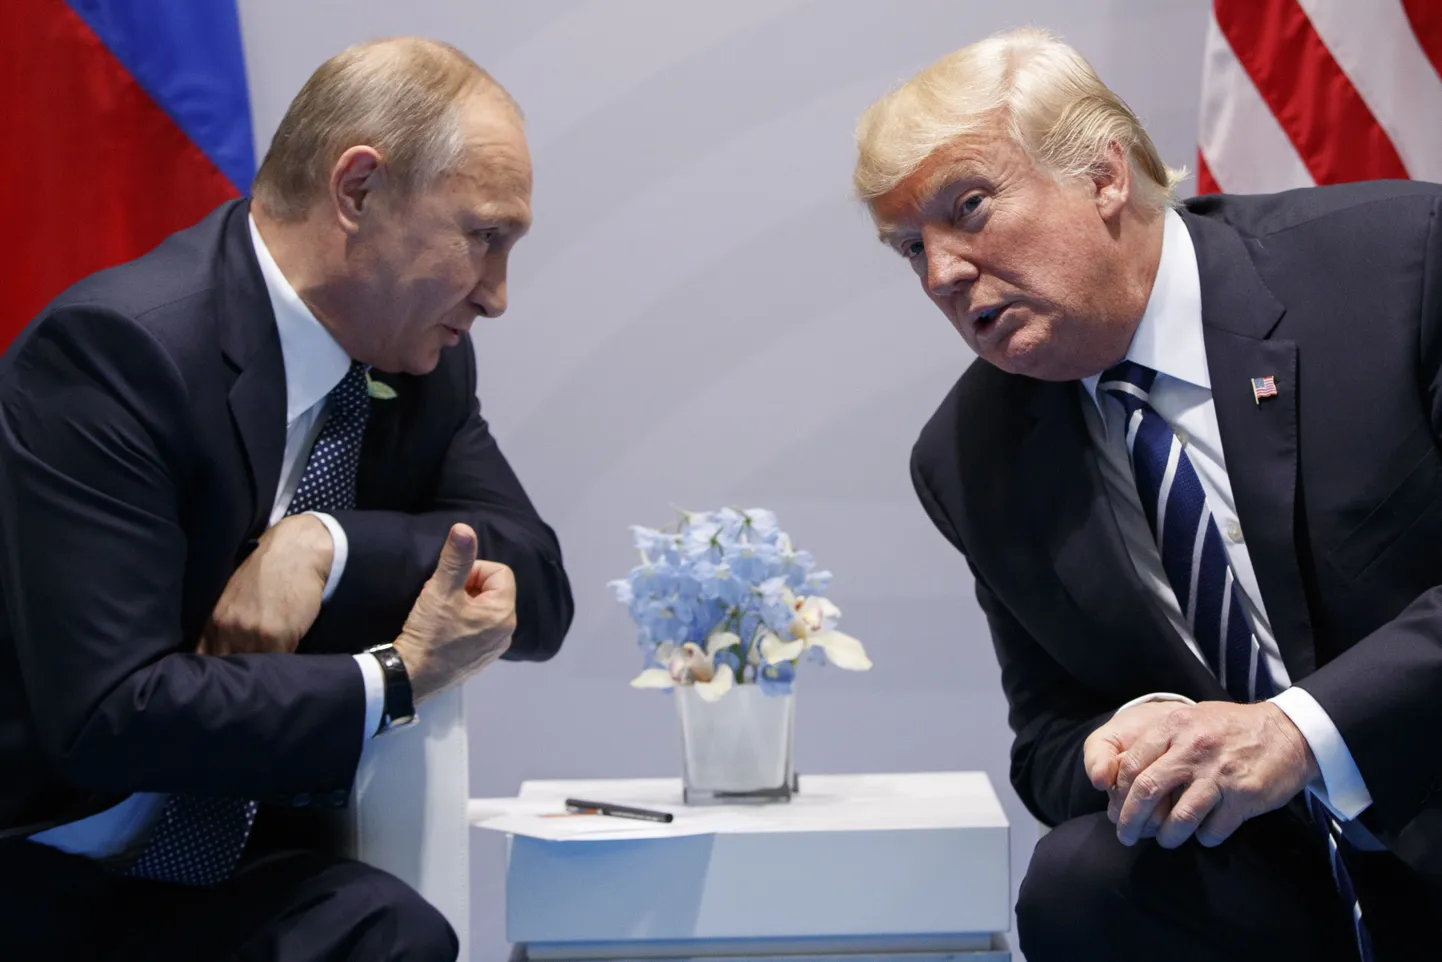 Владимир Путин и Дональд Трамп умеют разговаривать, несмотря ни на какие помехи и обвинения, что они демонстрировали еще в 2017 году.